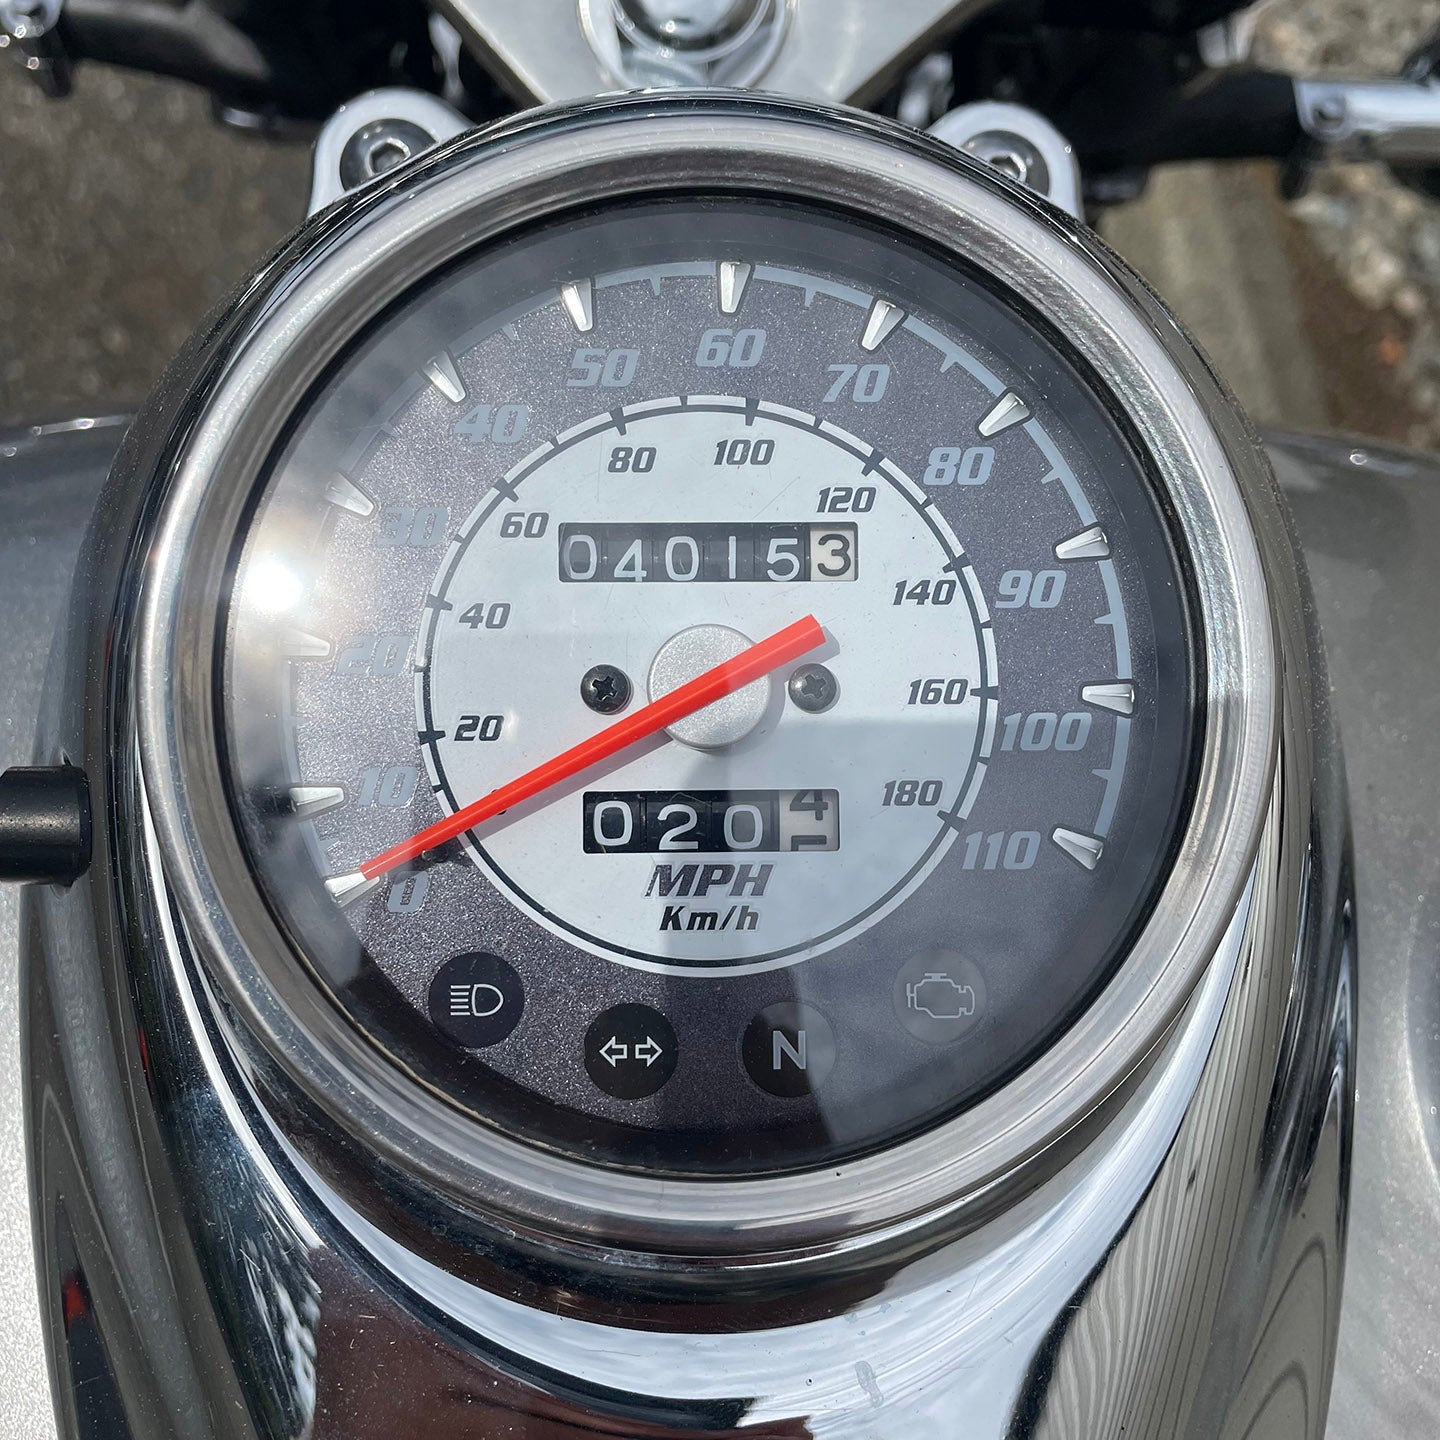 2014 Yamaha V-Star 650 Custom (4,015 Miles)